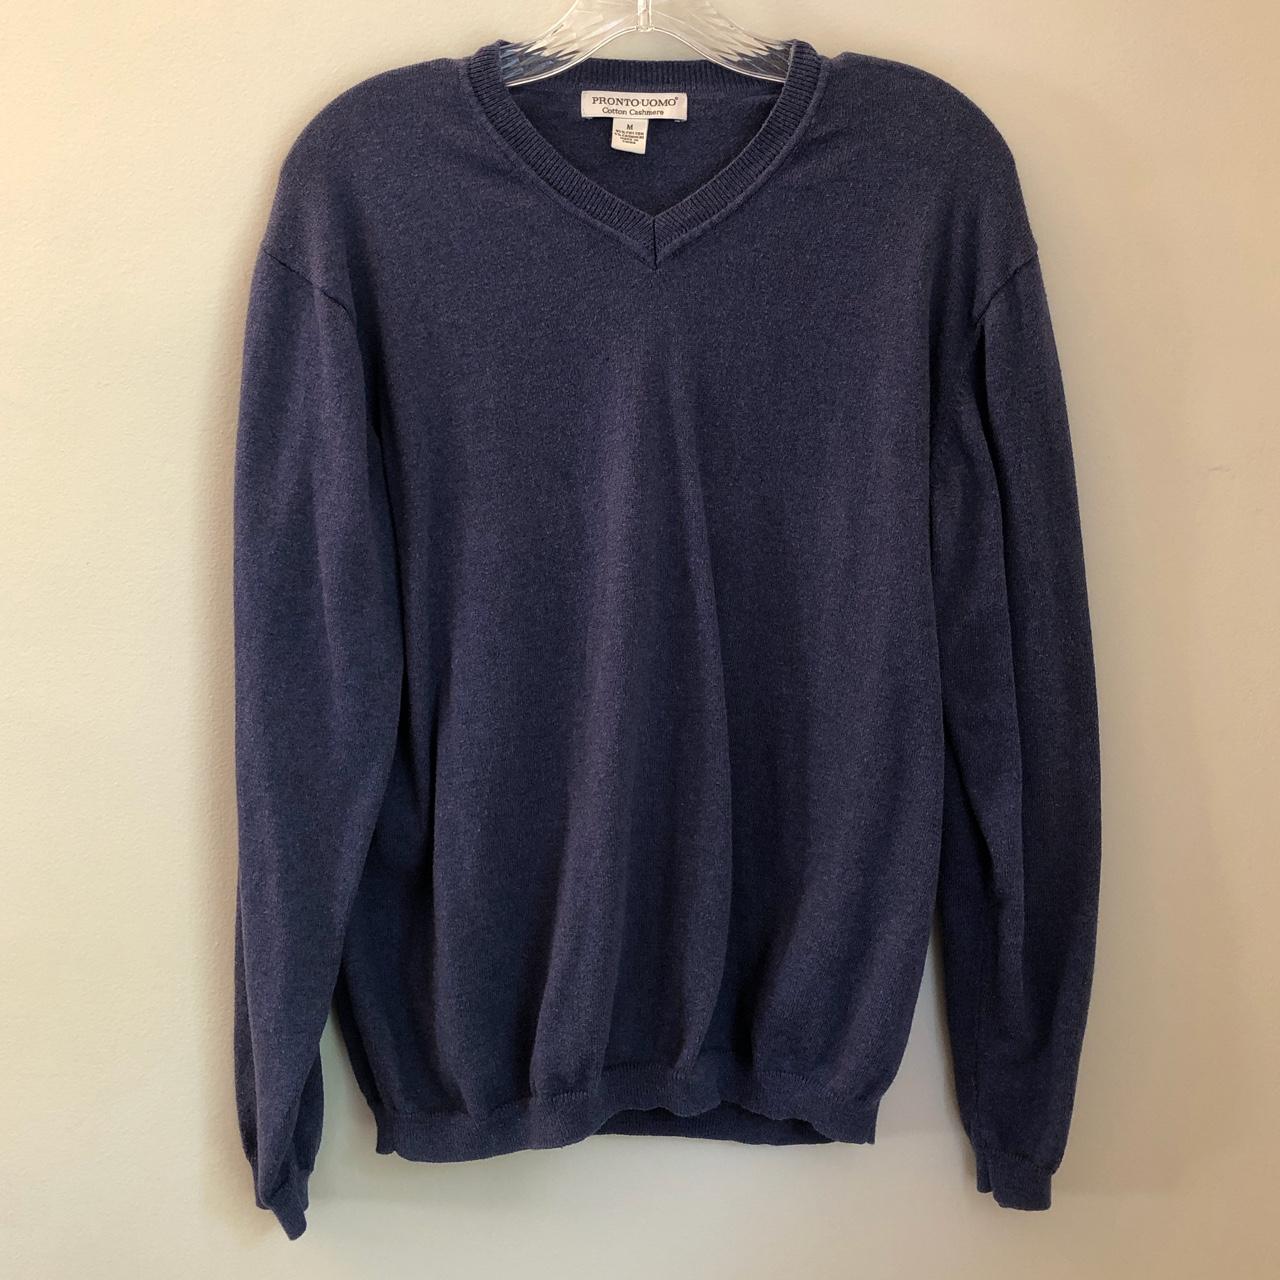 Navy Bluish Gray Cotton Cashmere Sweater ⭐️... - Depop